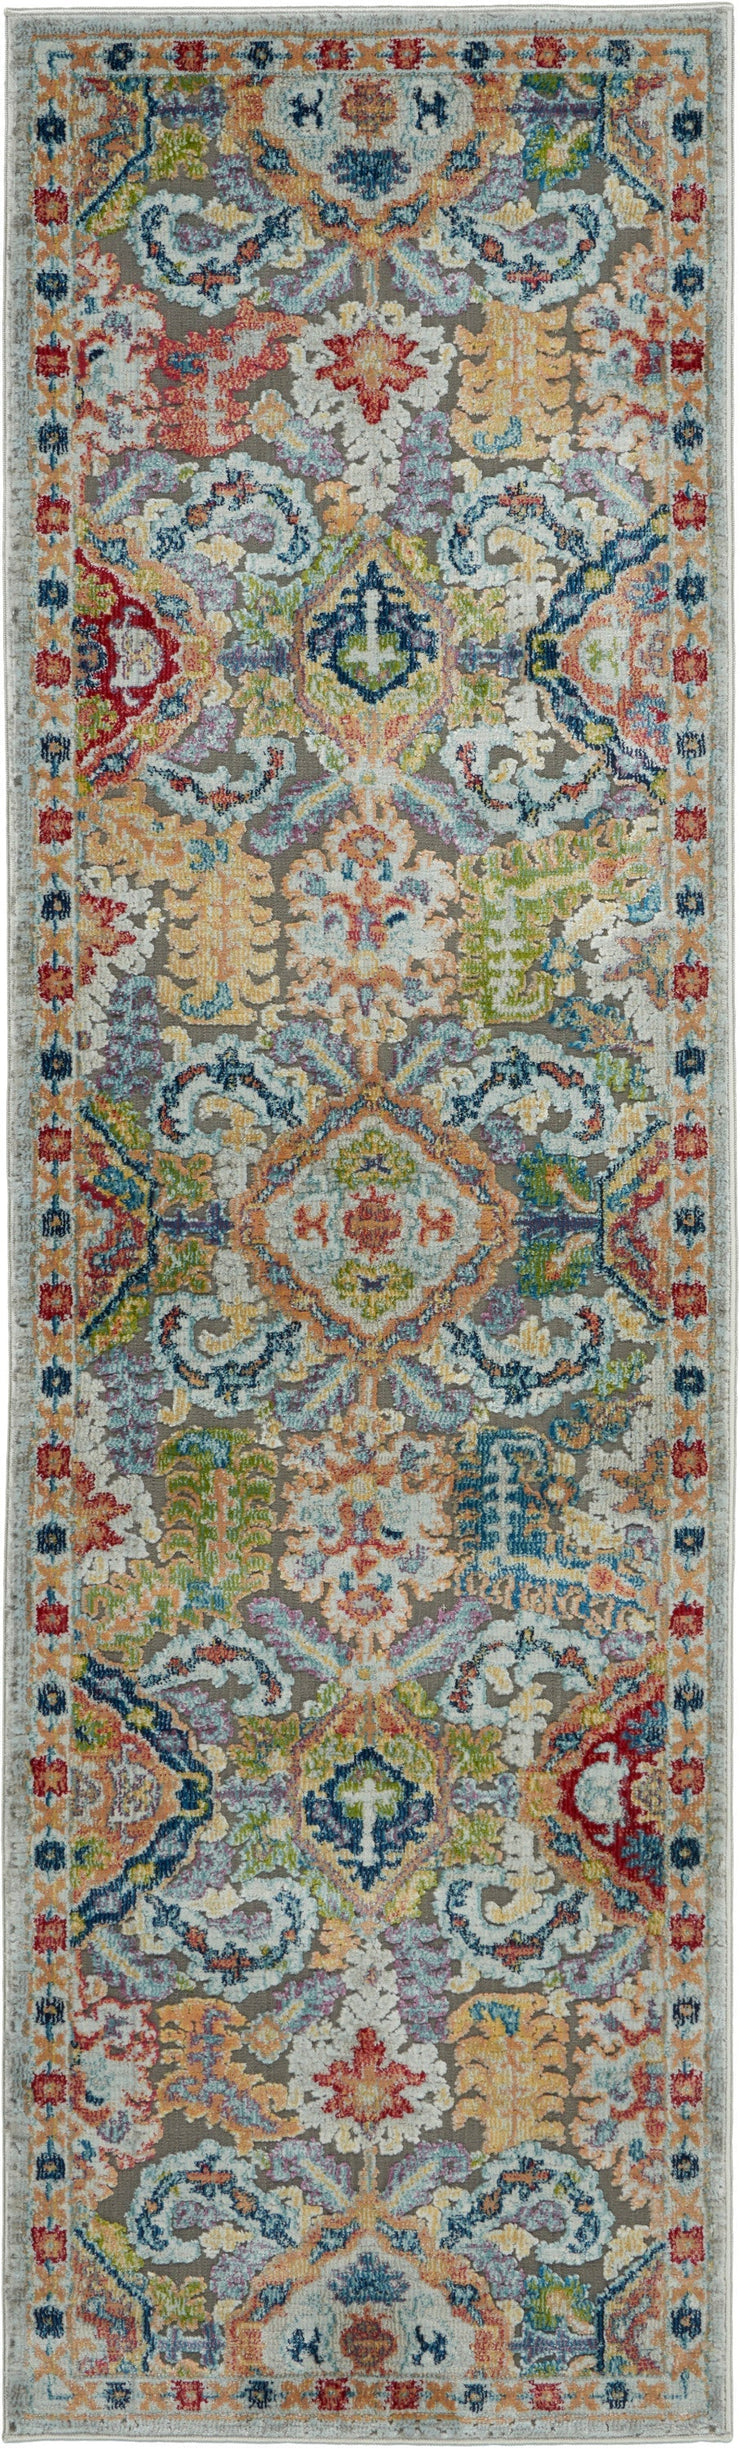 ankara global grey multicolor rug by nourison 99446498137 redo 3